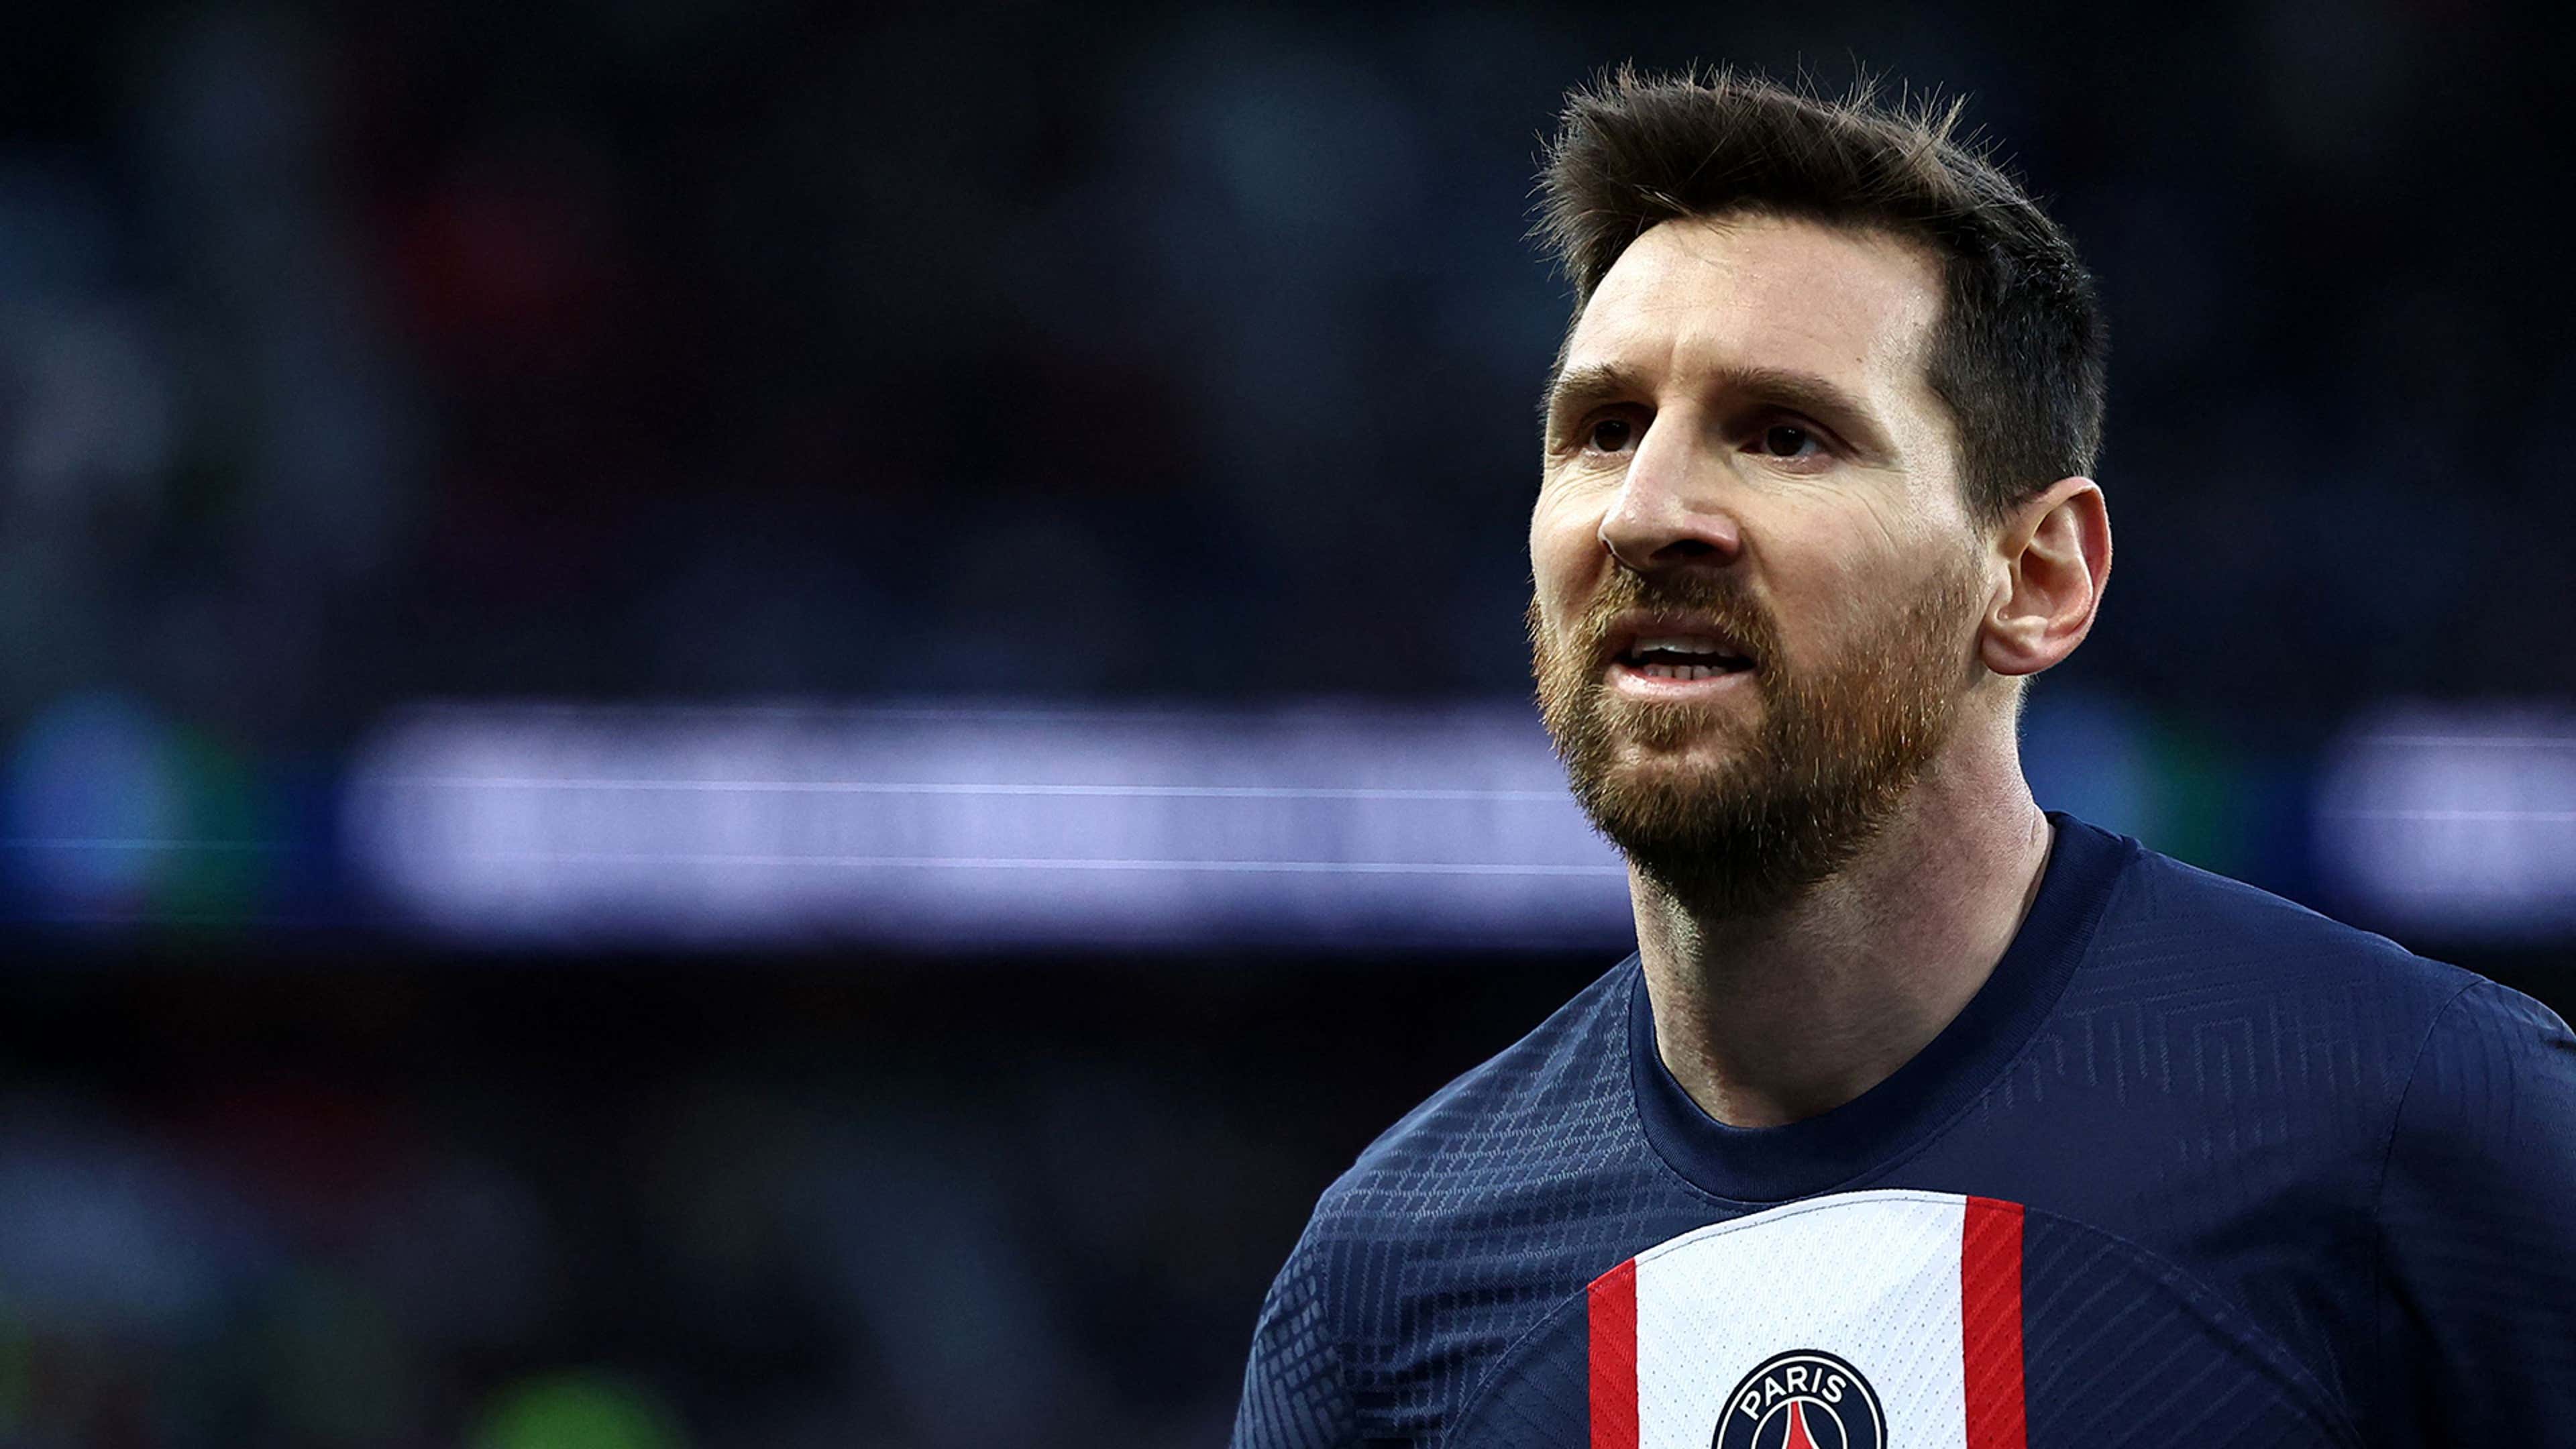 Lionel Messi PSG 2022-23 HIC 16:9